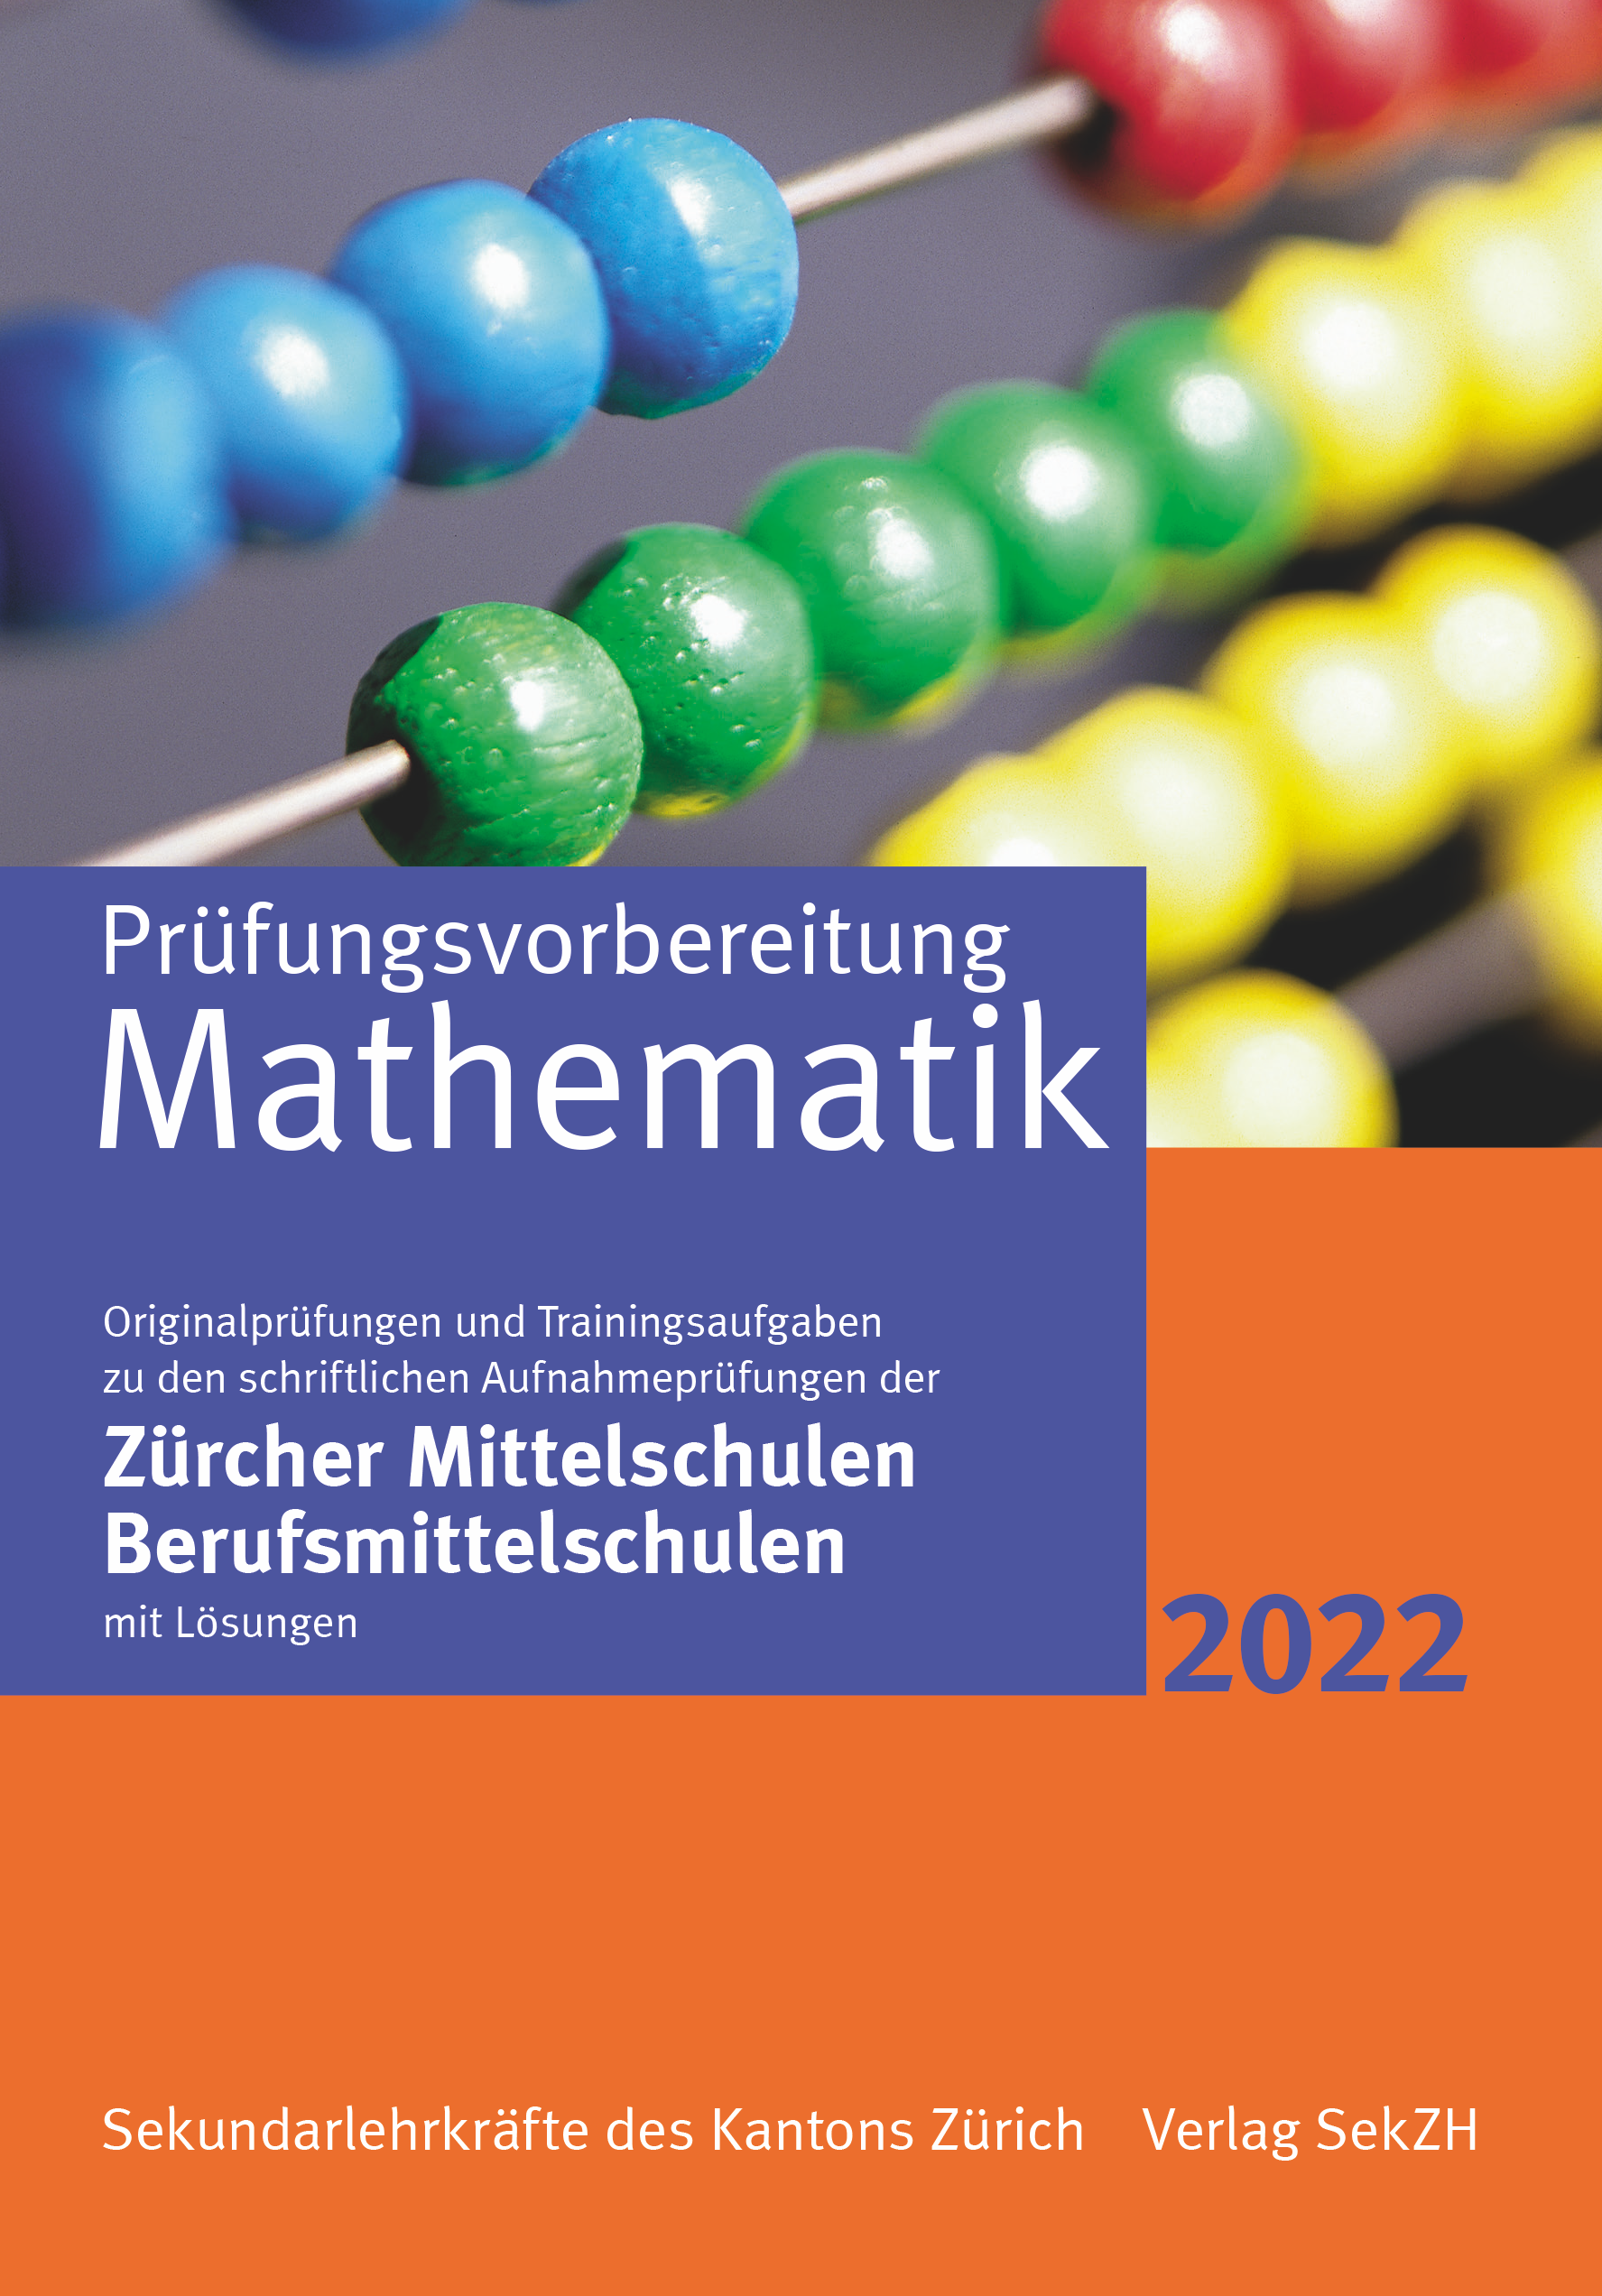 P102 - Prüfungsvorbereitung Mathematik 2022